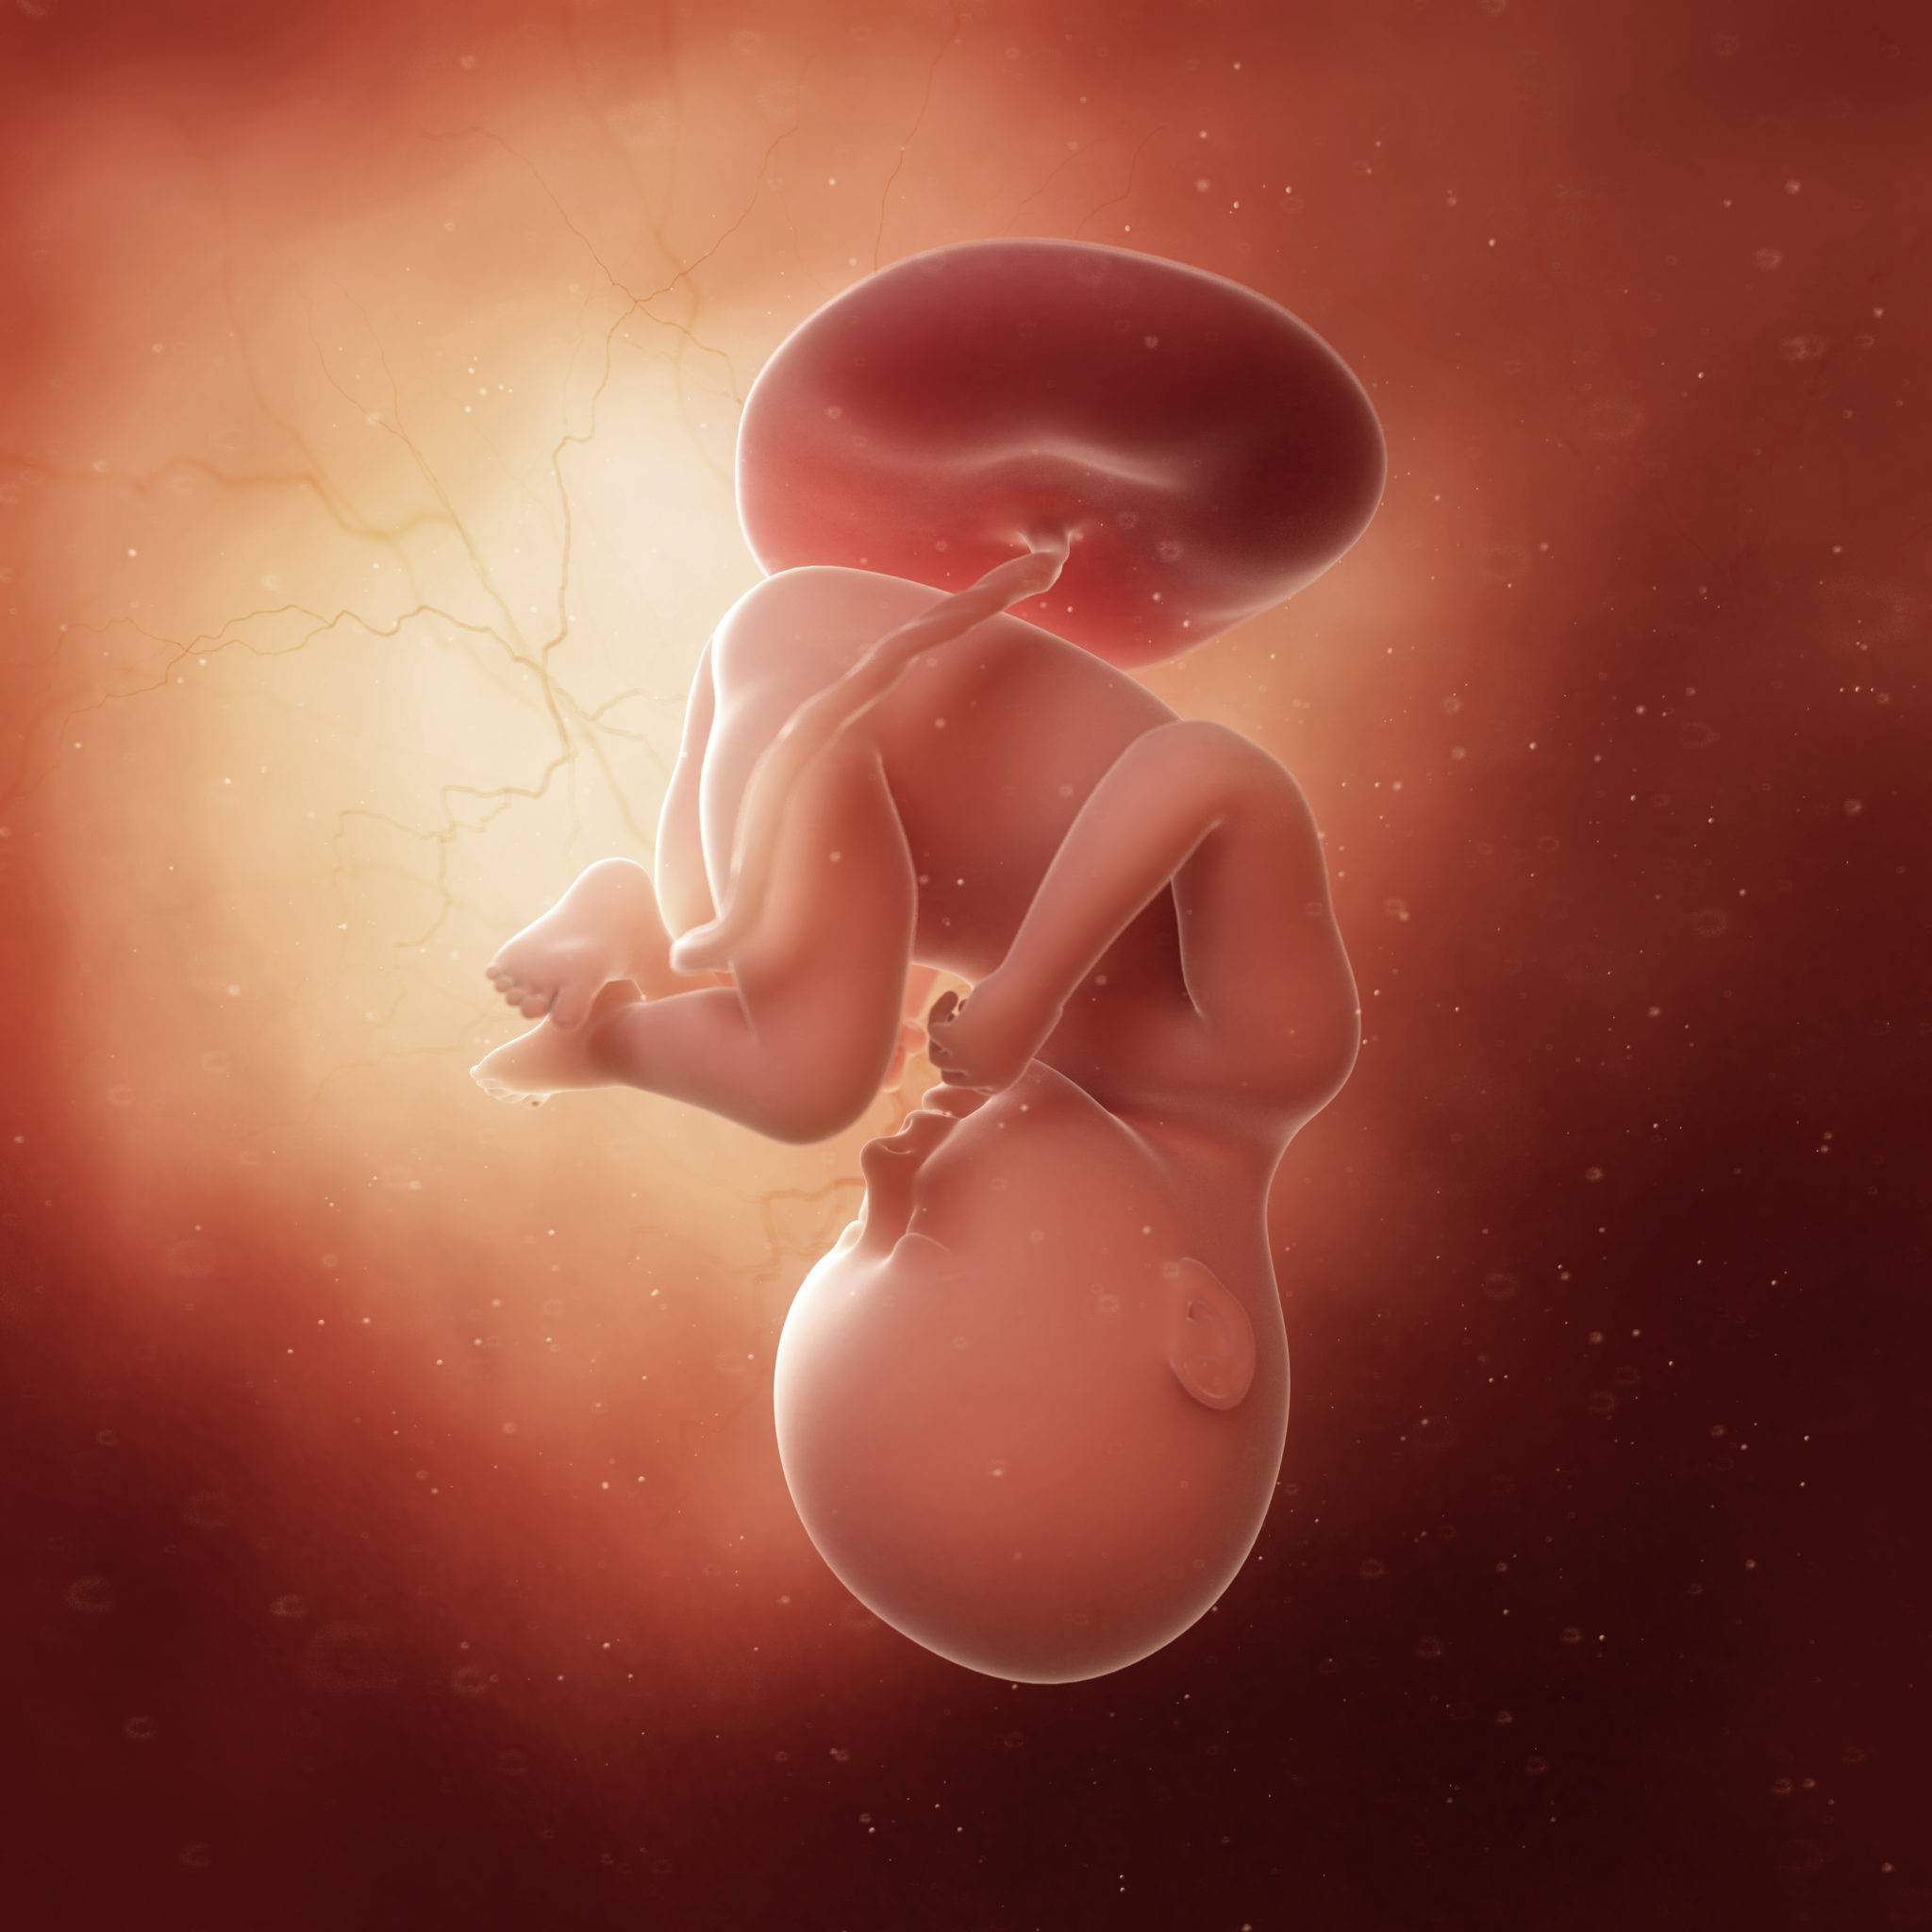 35 неделя беременности: ощущения, признаки, развитие плода